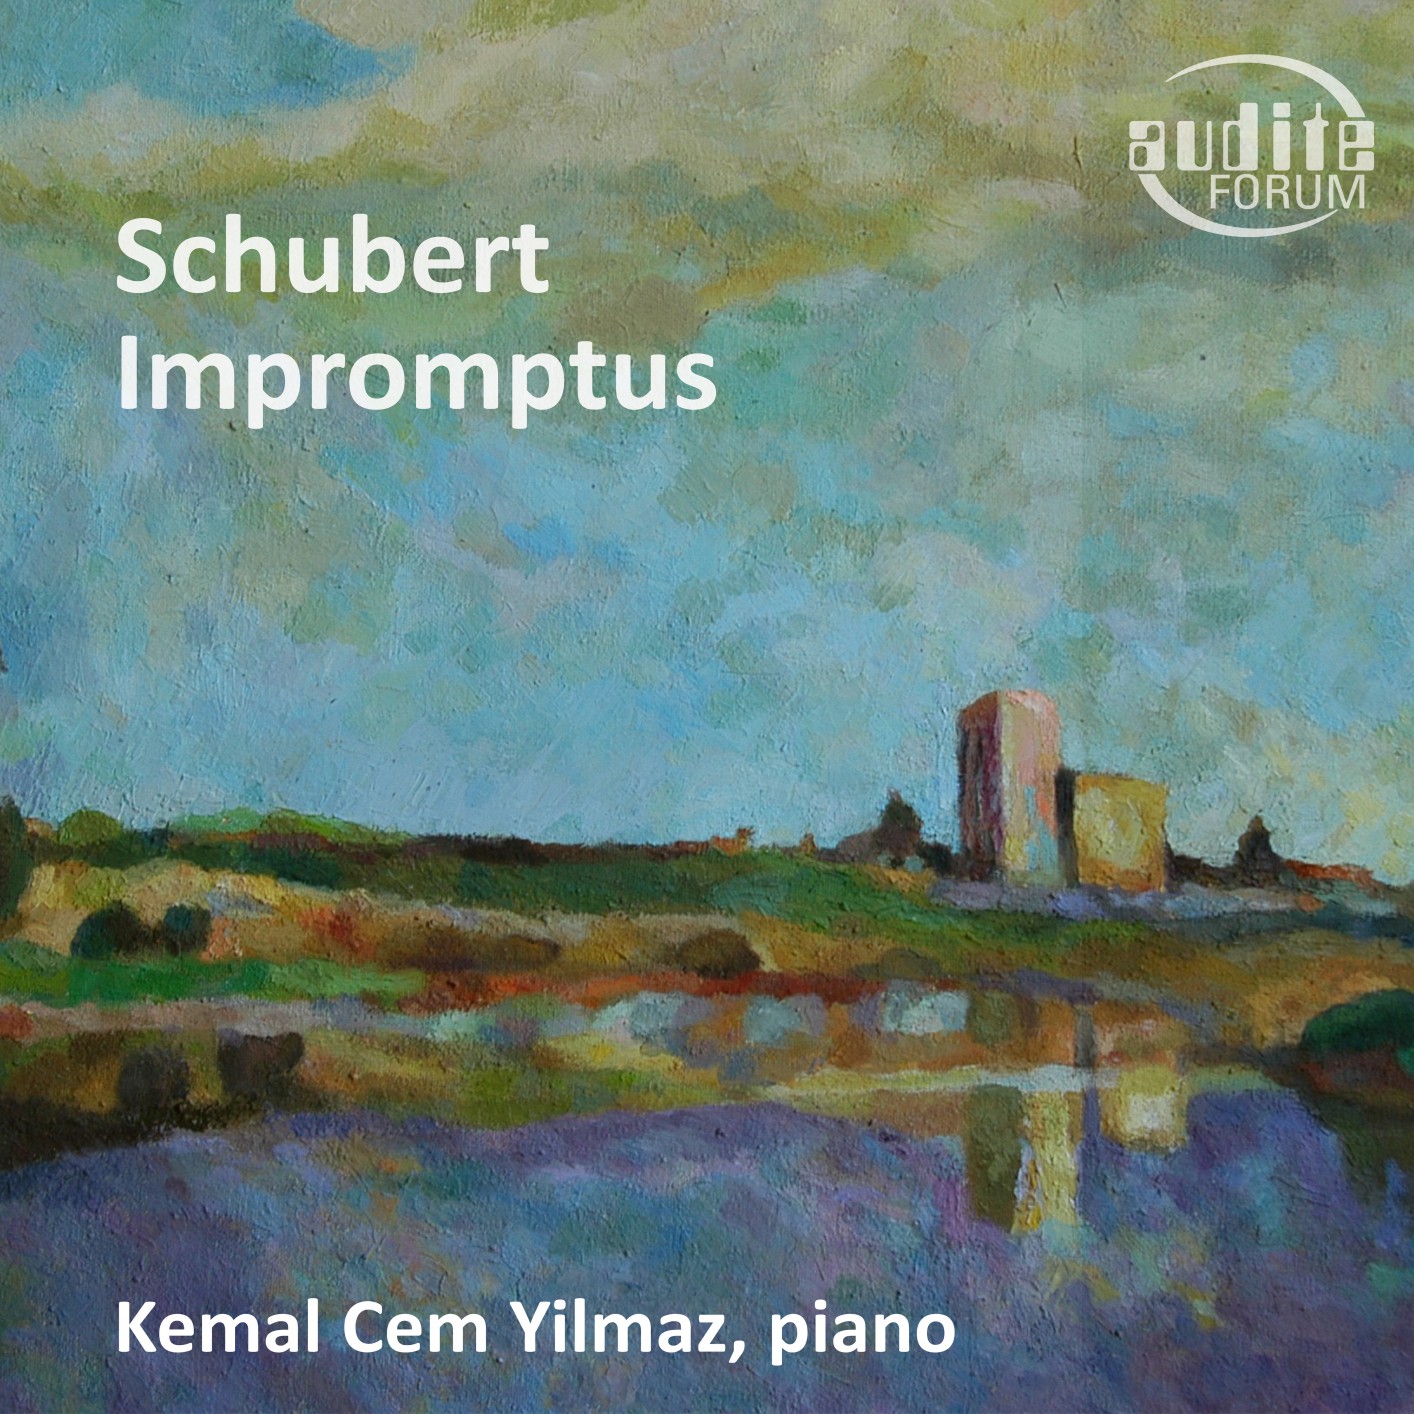 Kemal Cem Yilmaz - Schubert: Impromptus (2019) [FLAC 24bit/96kHz]